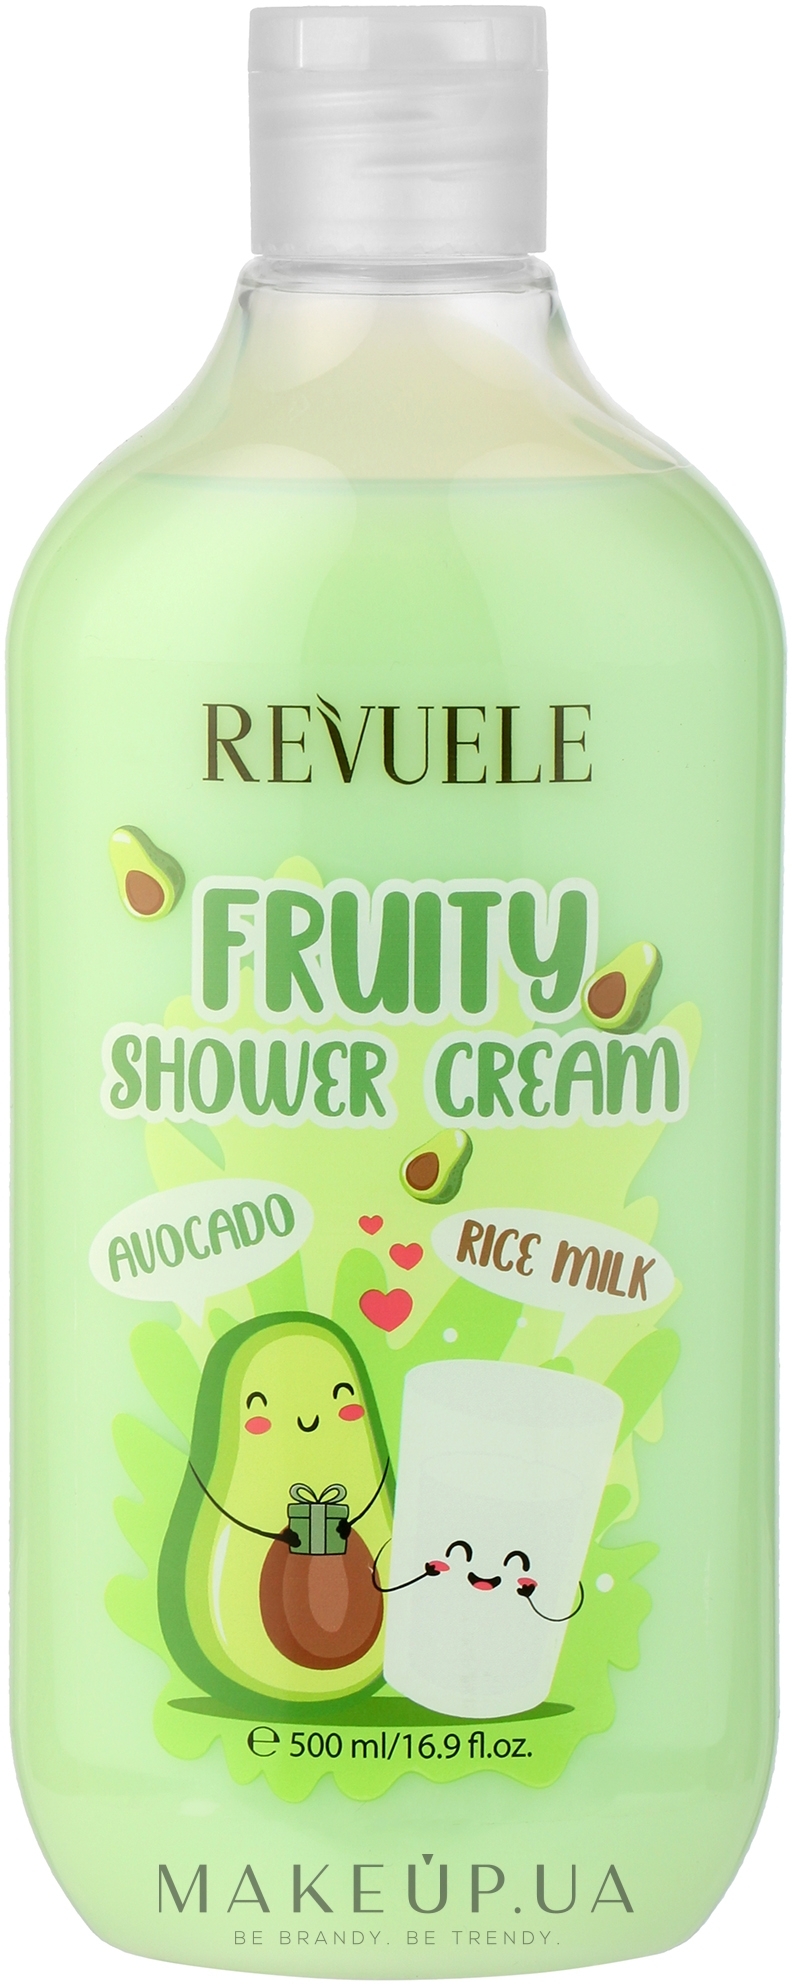 Крем для душа с авокадо и рисовым молоком - Revuele Fruity Shower Cream Avocado and Rice Milk — фото 500ml